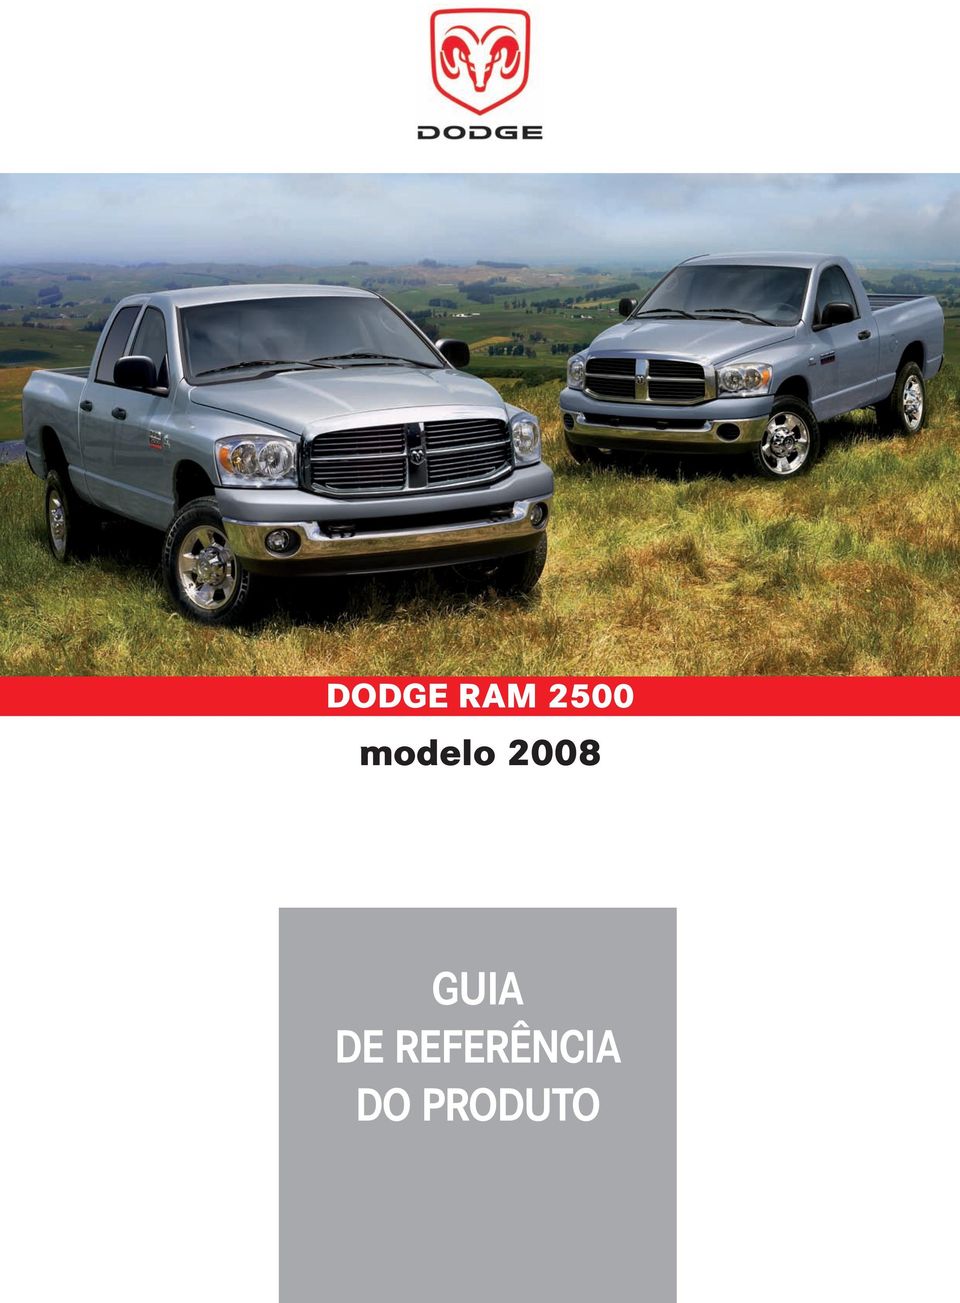 2008 GUIA DE